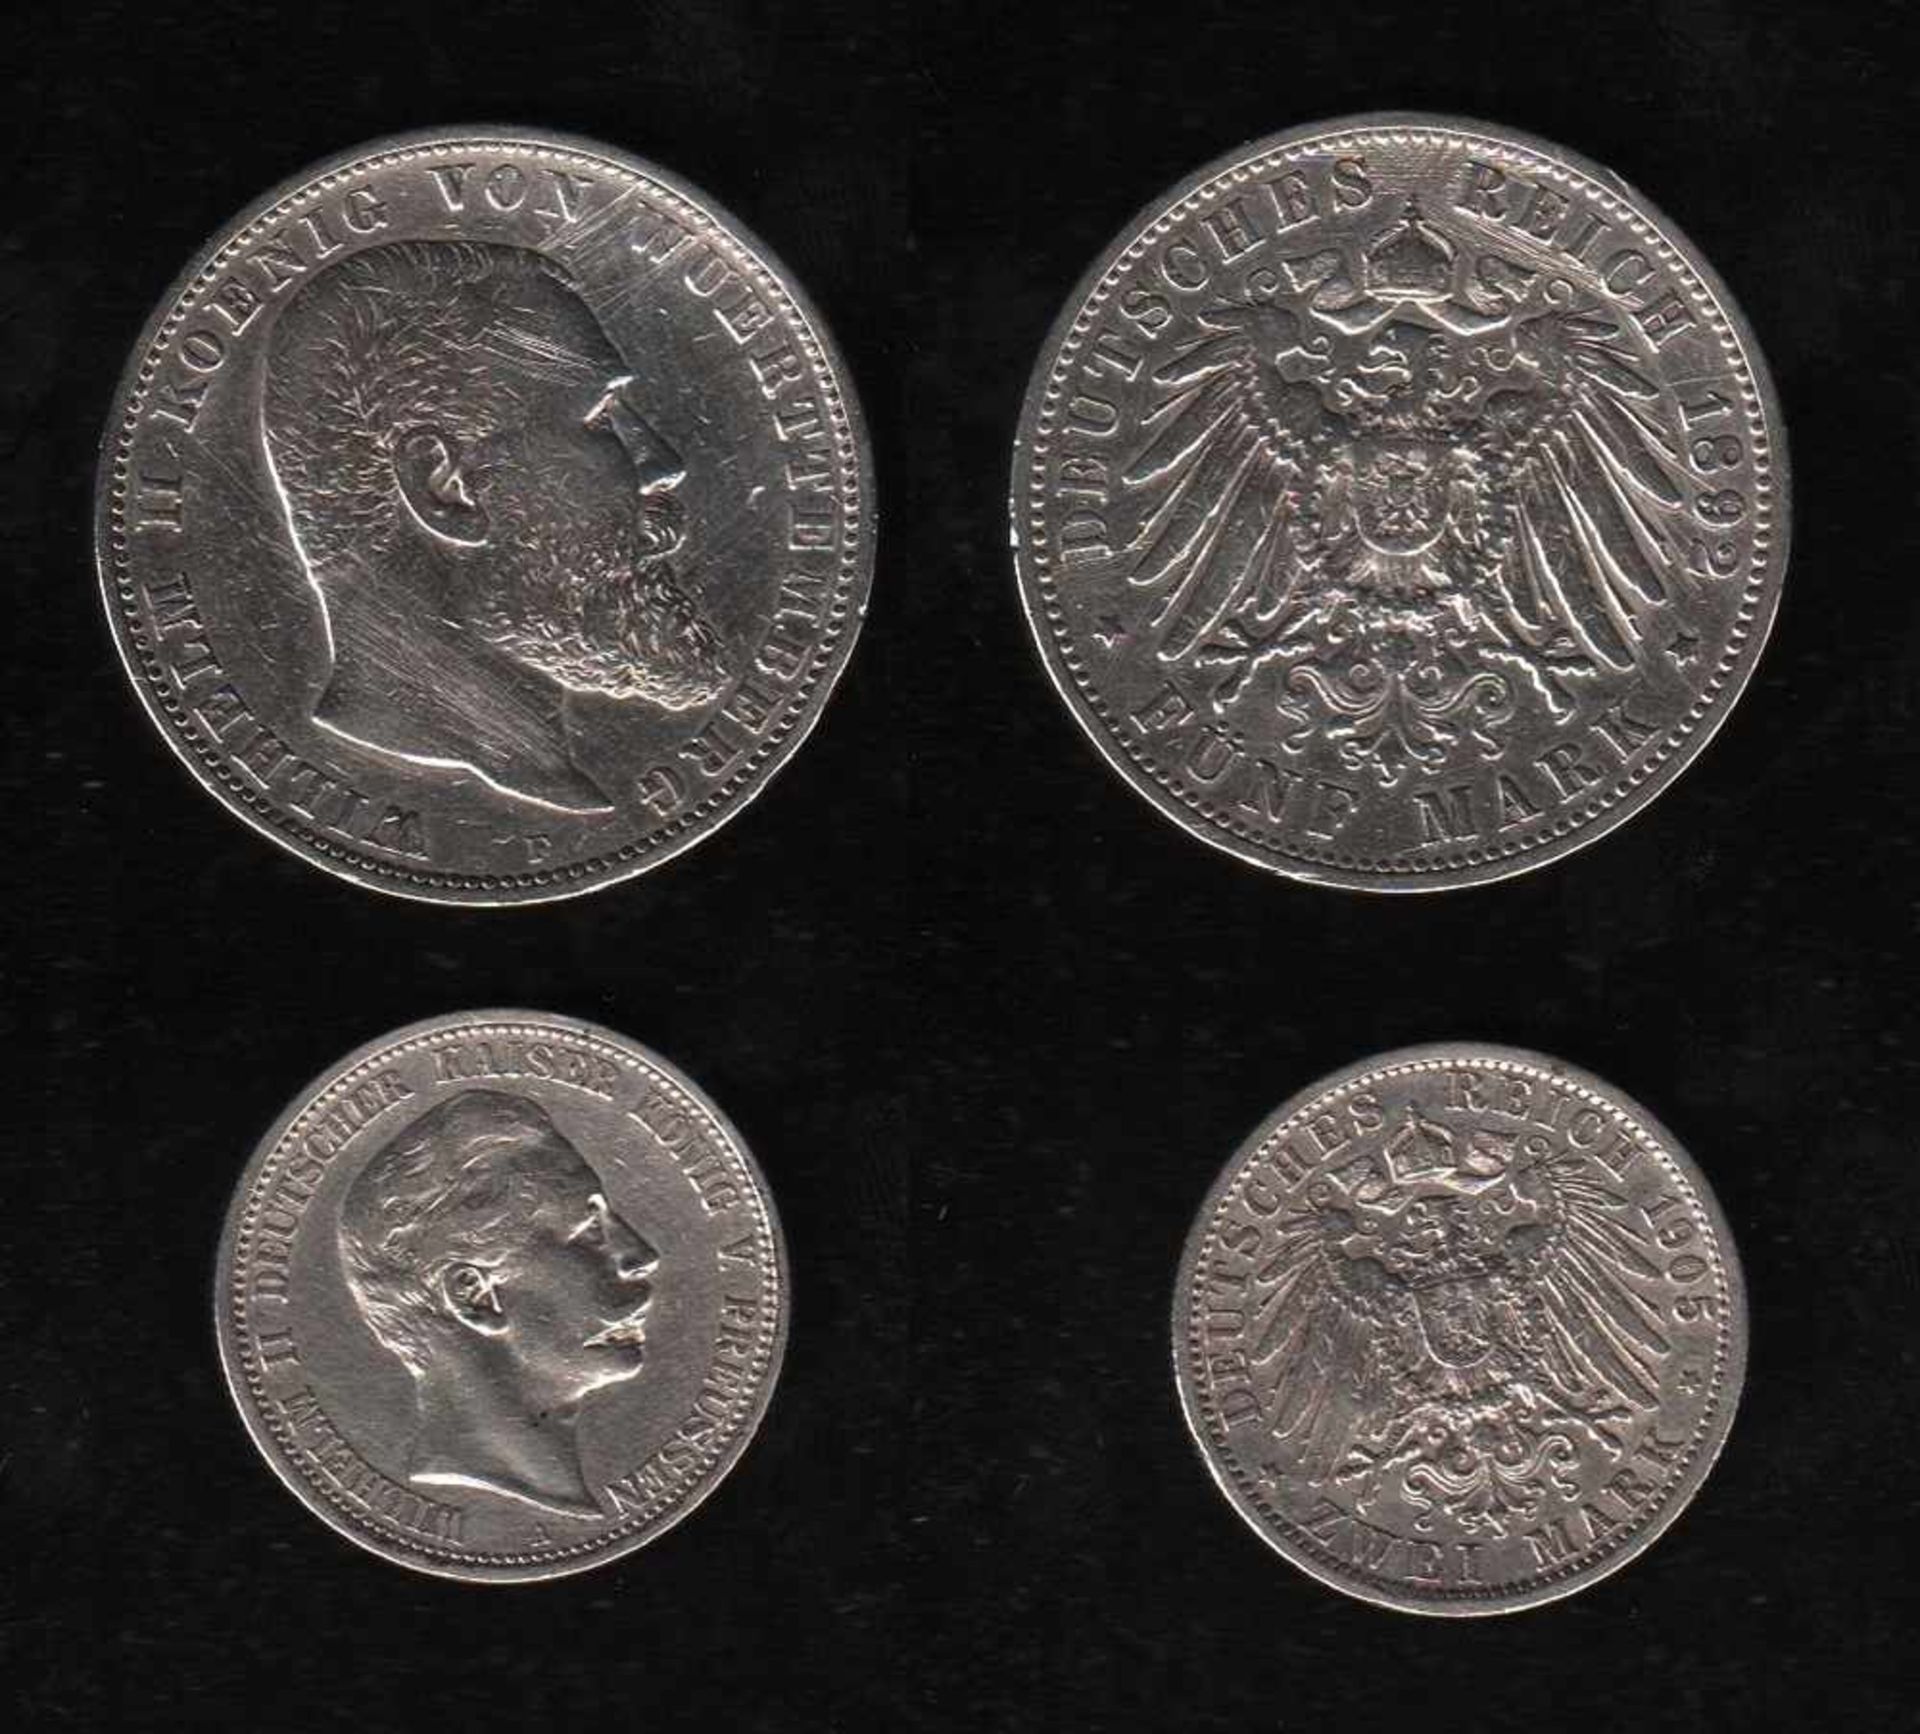 # Deutsches Reich. Silbermünze. 5 Mark. Wilhelm II., König von Württemberg. F 1892. Vorderseite: